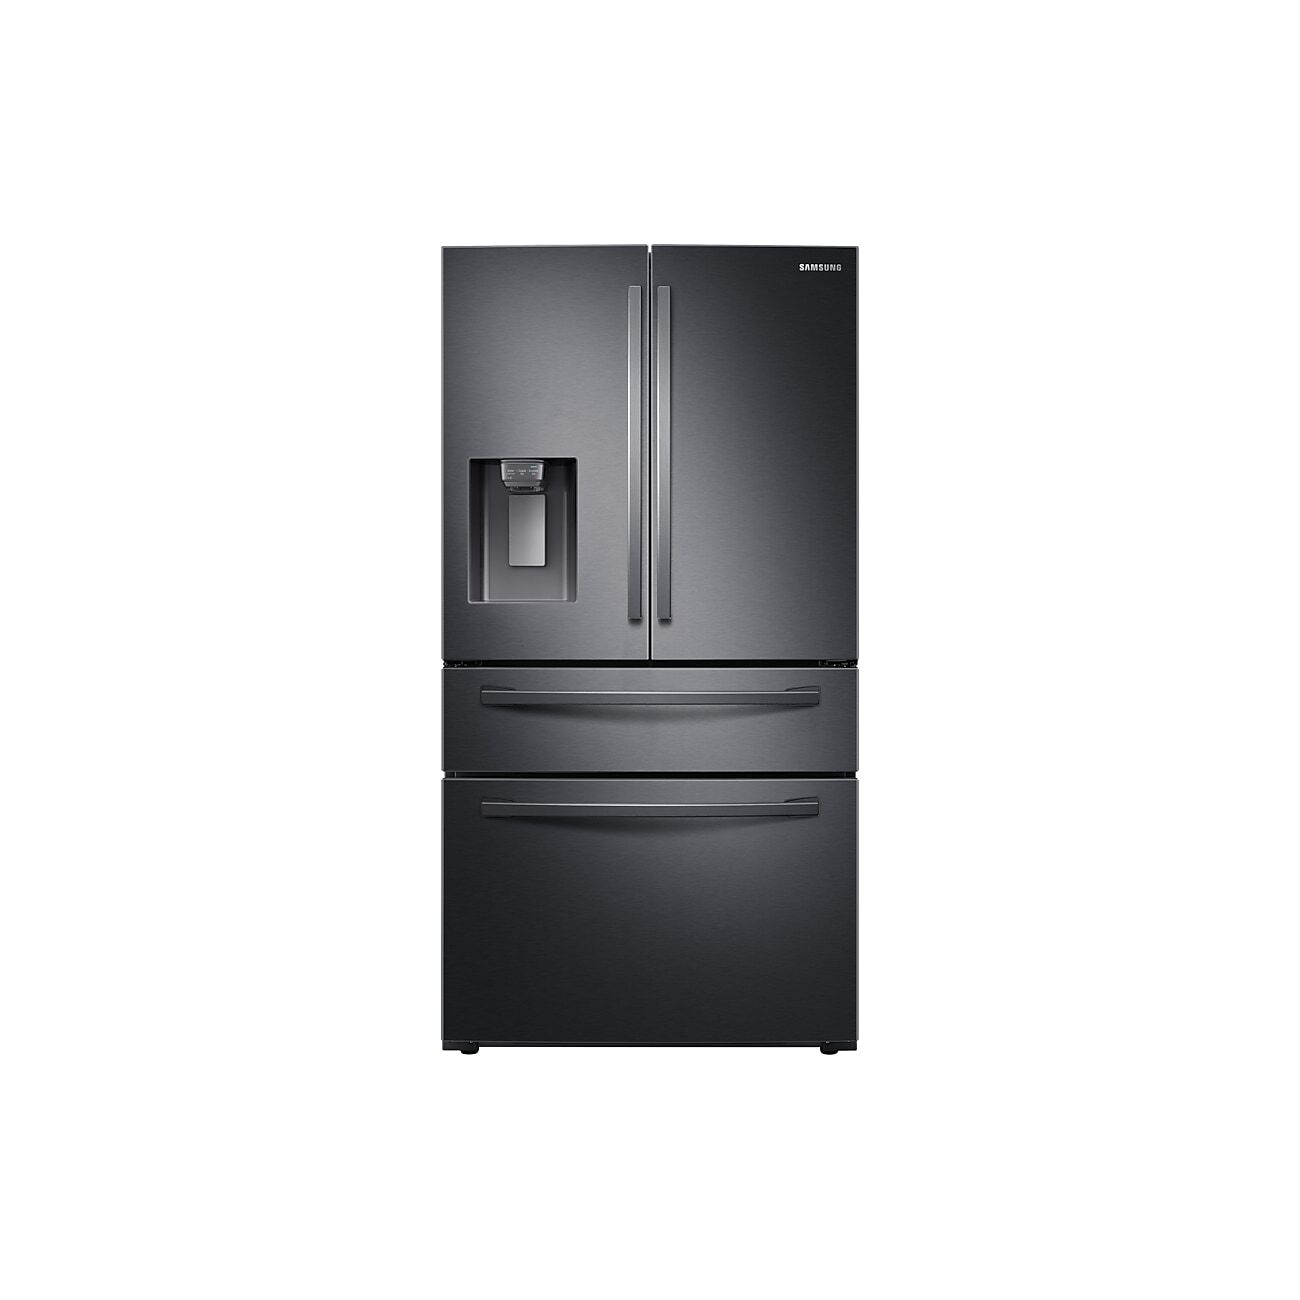 Samsung AW4 French Style Fridge Freezer with FlexZone™ in Black (RF24R7201B1/EU)